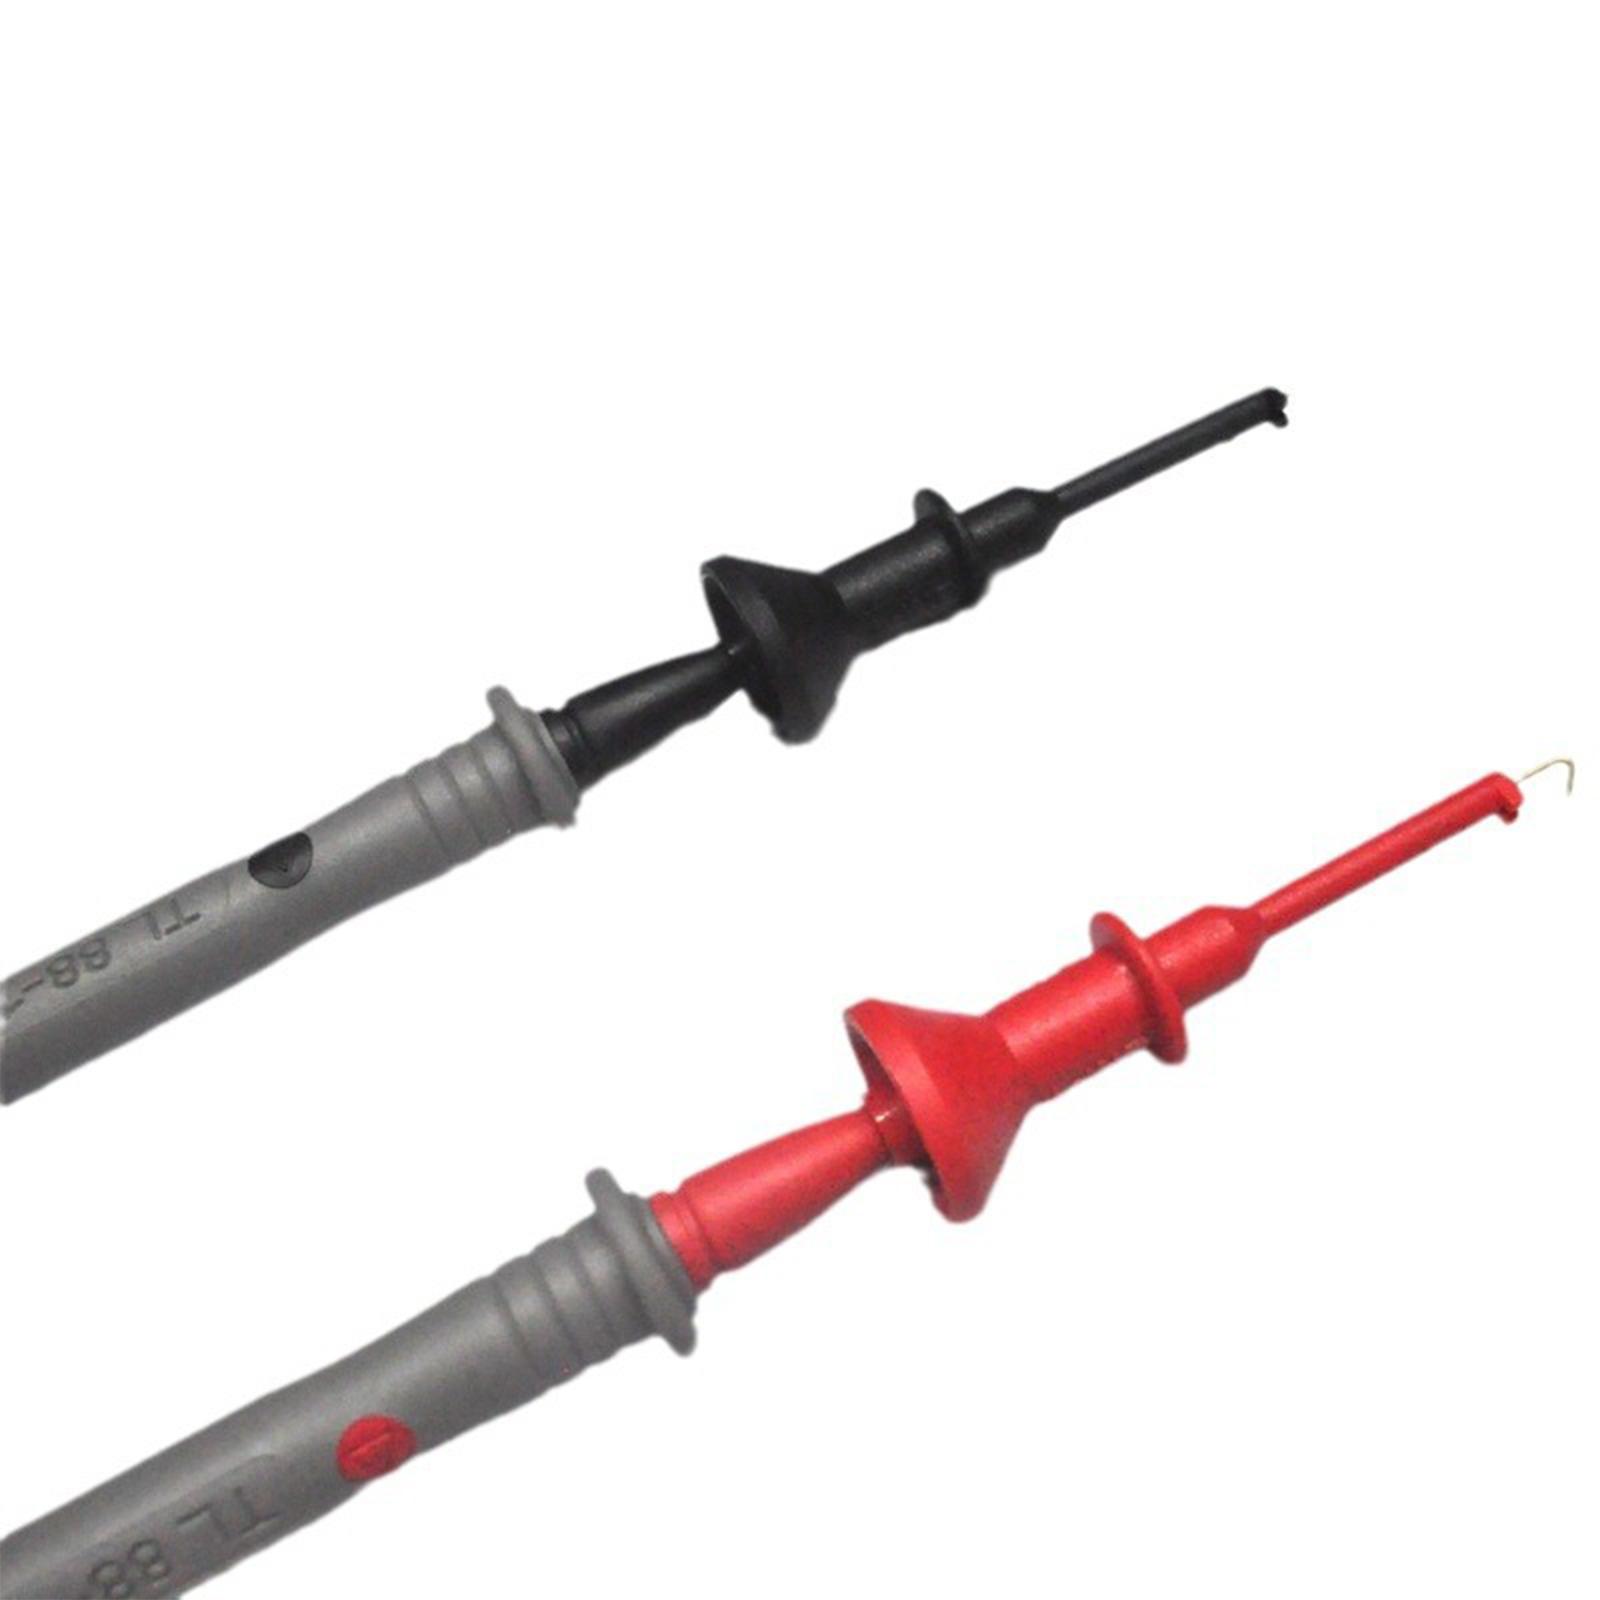 2Pcs IC Grabber Insulated Lightweight Flexible Practical Test Hook Clip 2mm